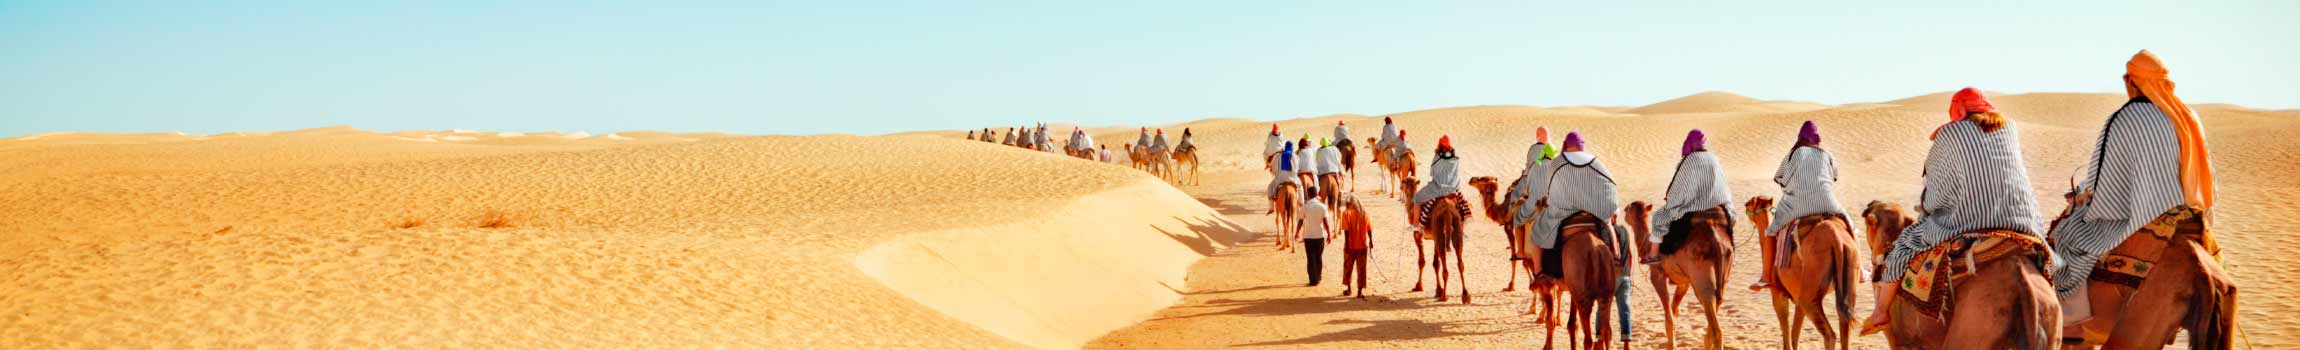 Touristen auf Kamelen in der Wüste